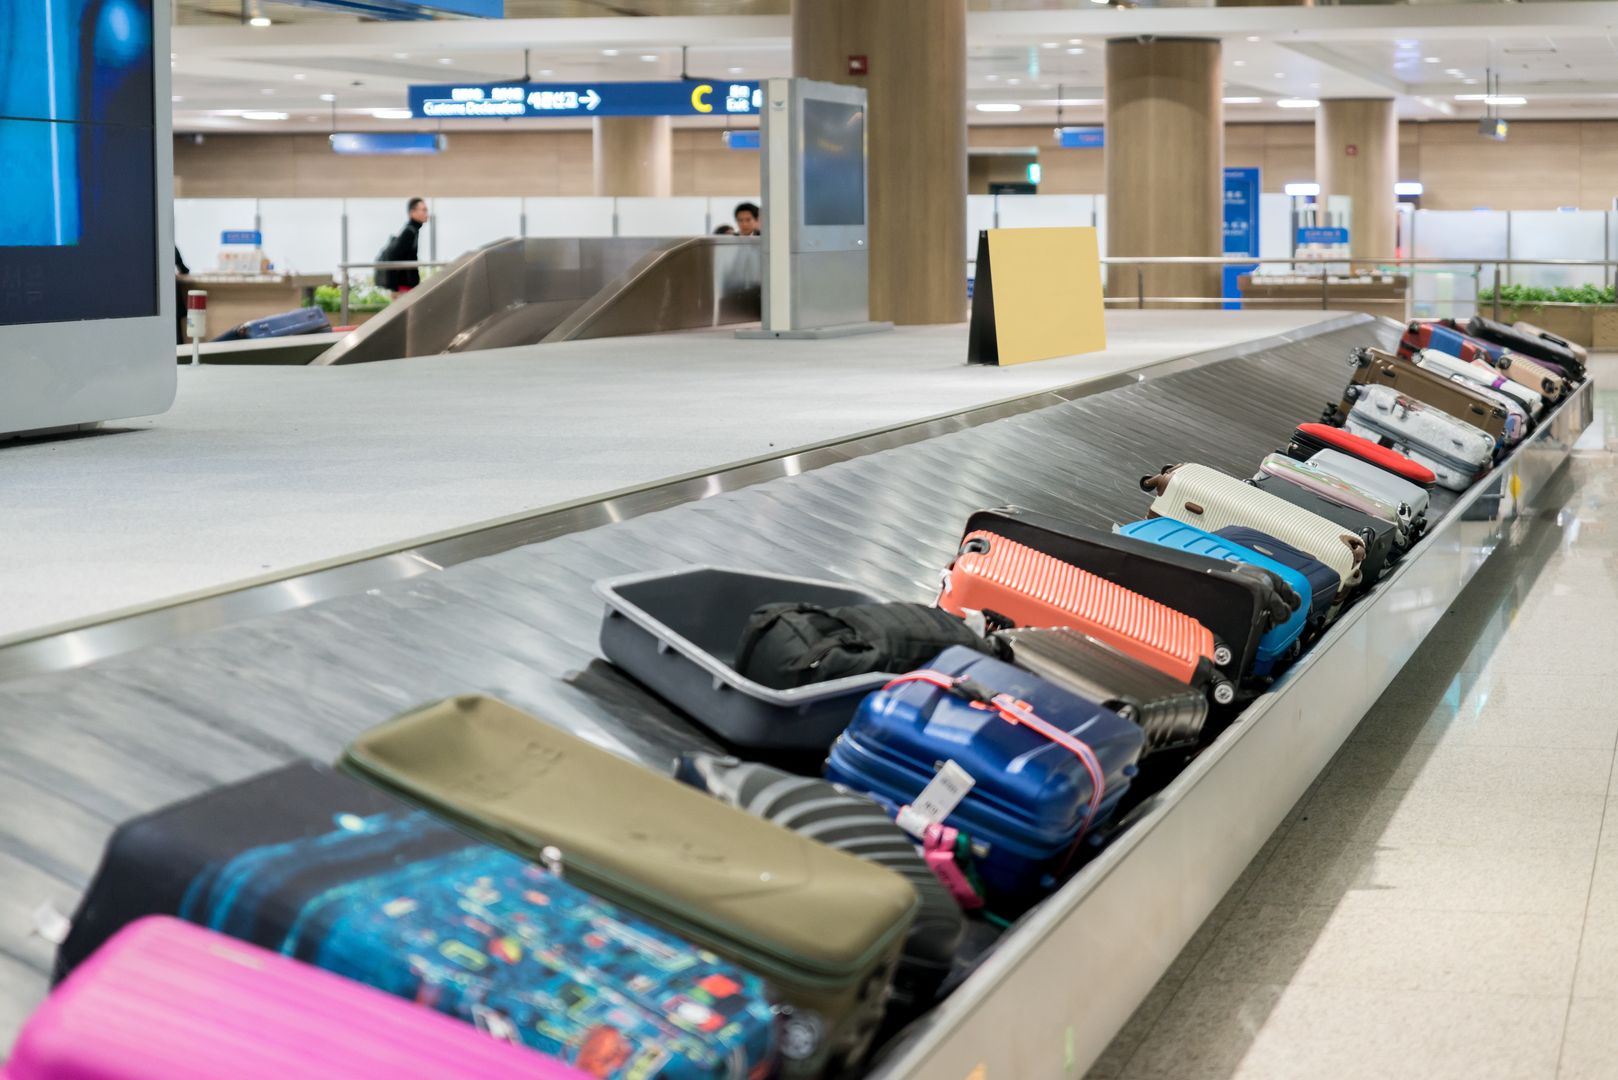 Stewardessa radzi, jakich walizek unikać. Są popularne wśród turystów